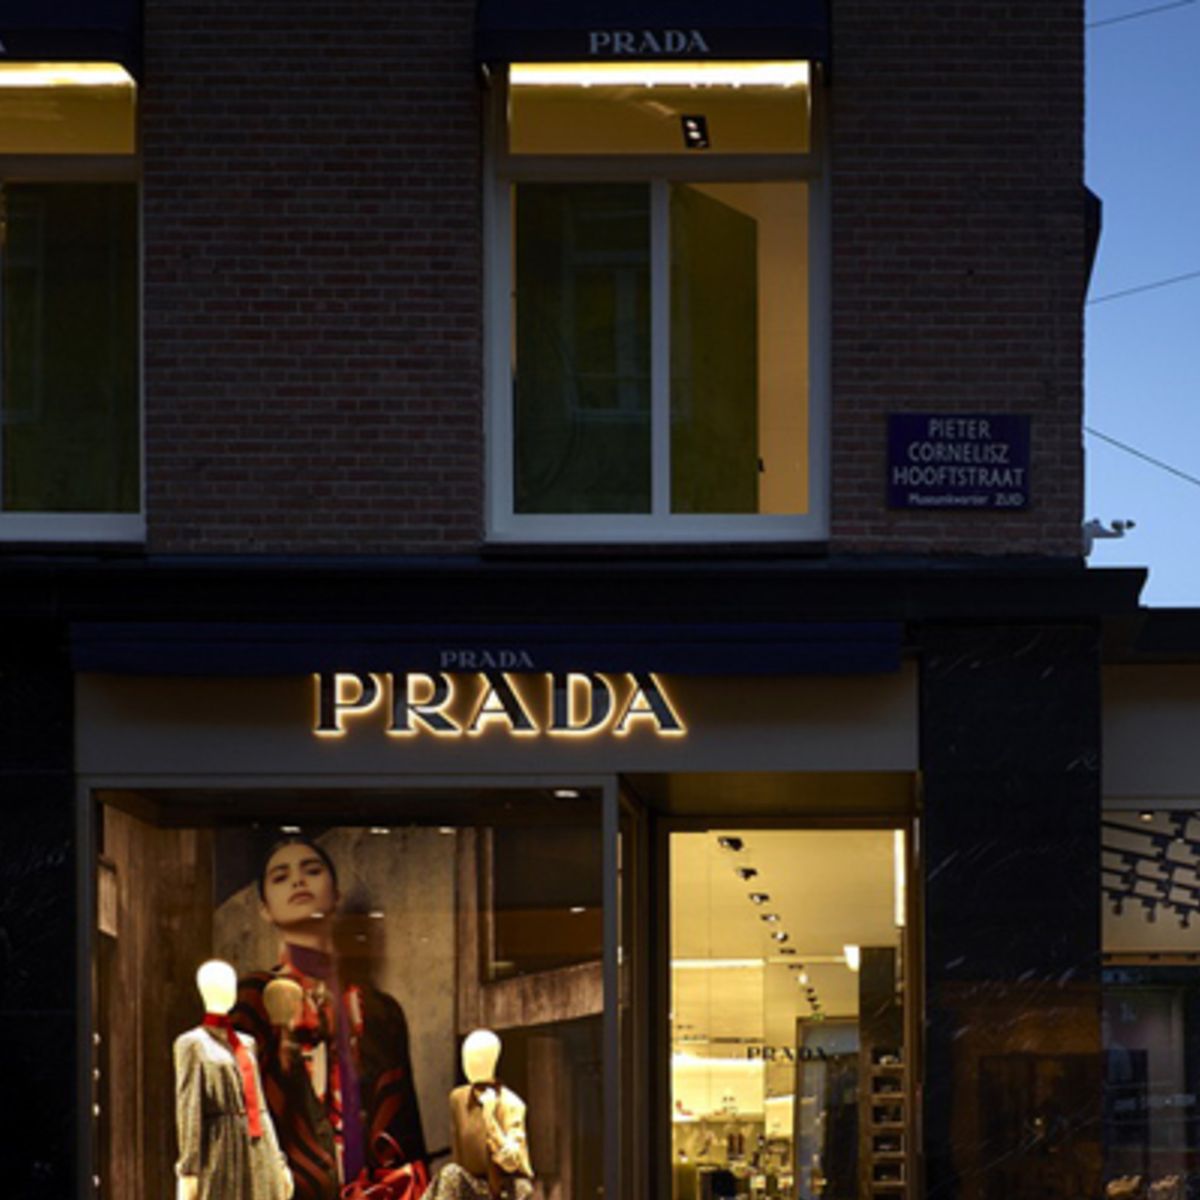 De eerste Prada-winkel Amsterdam geopend!